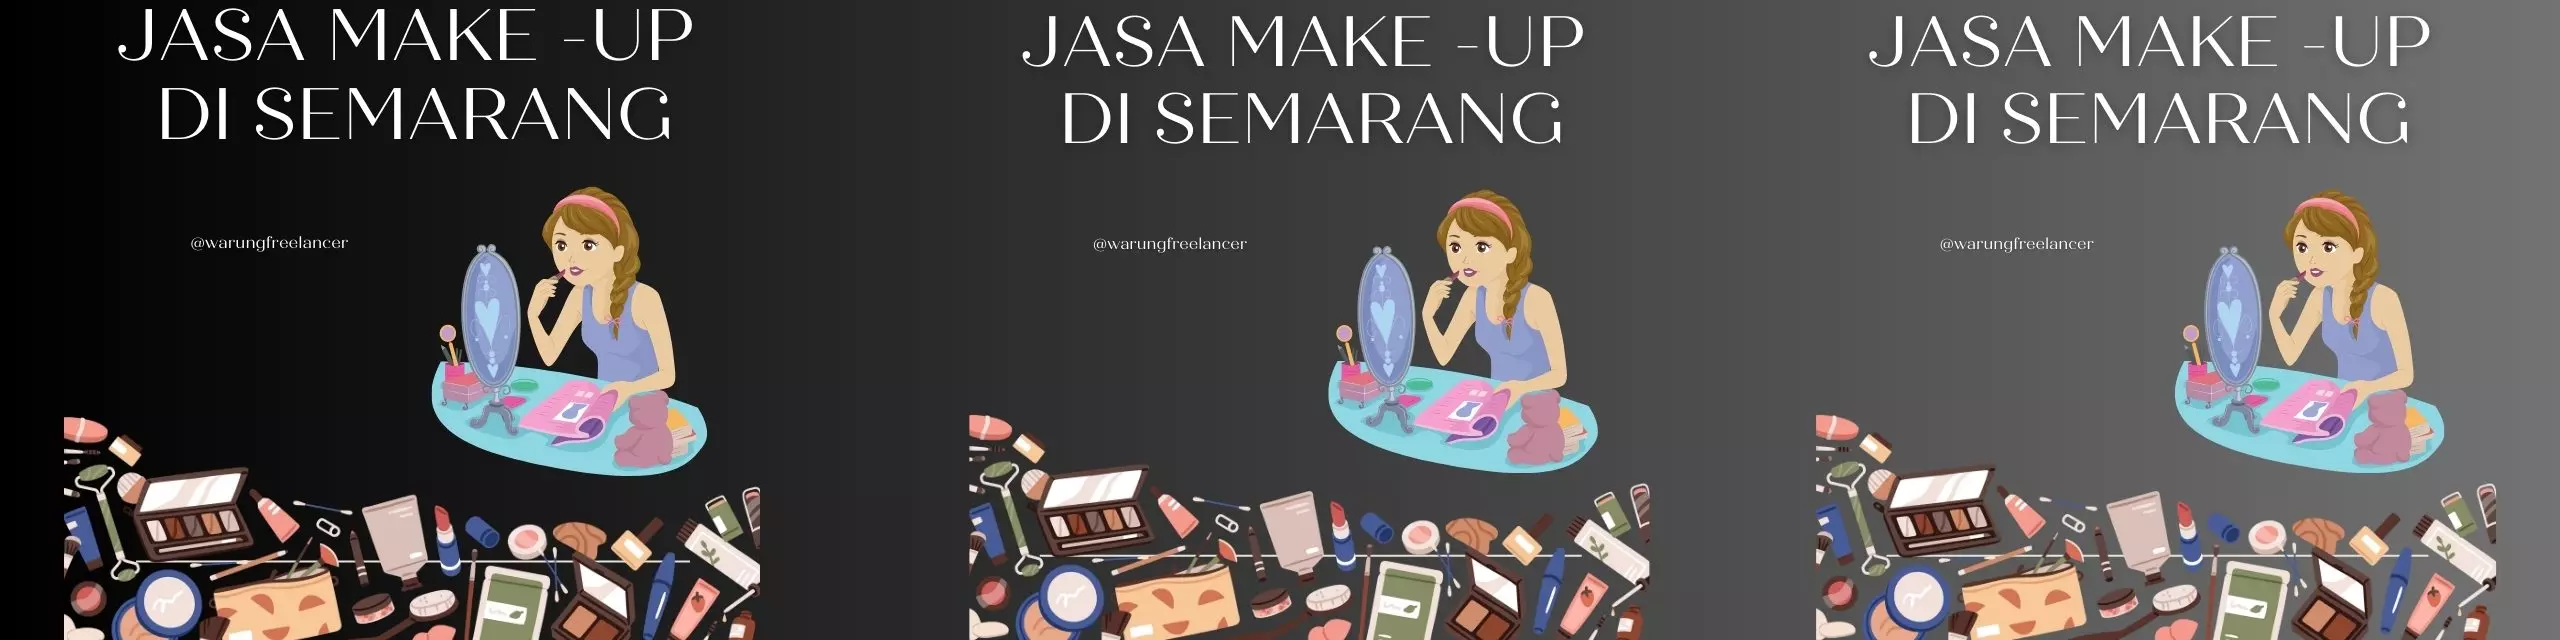 Jasa Make Up di Semarang